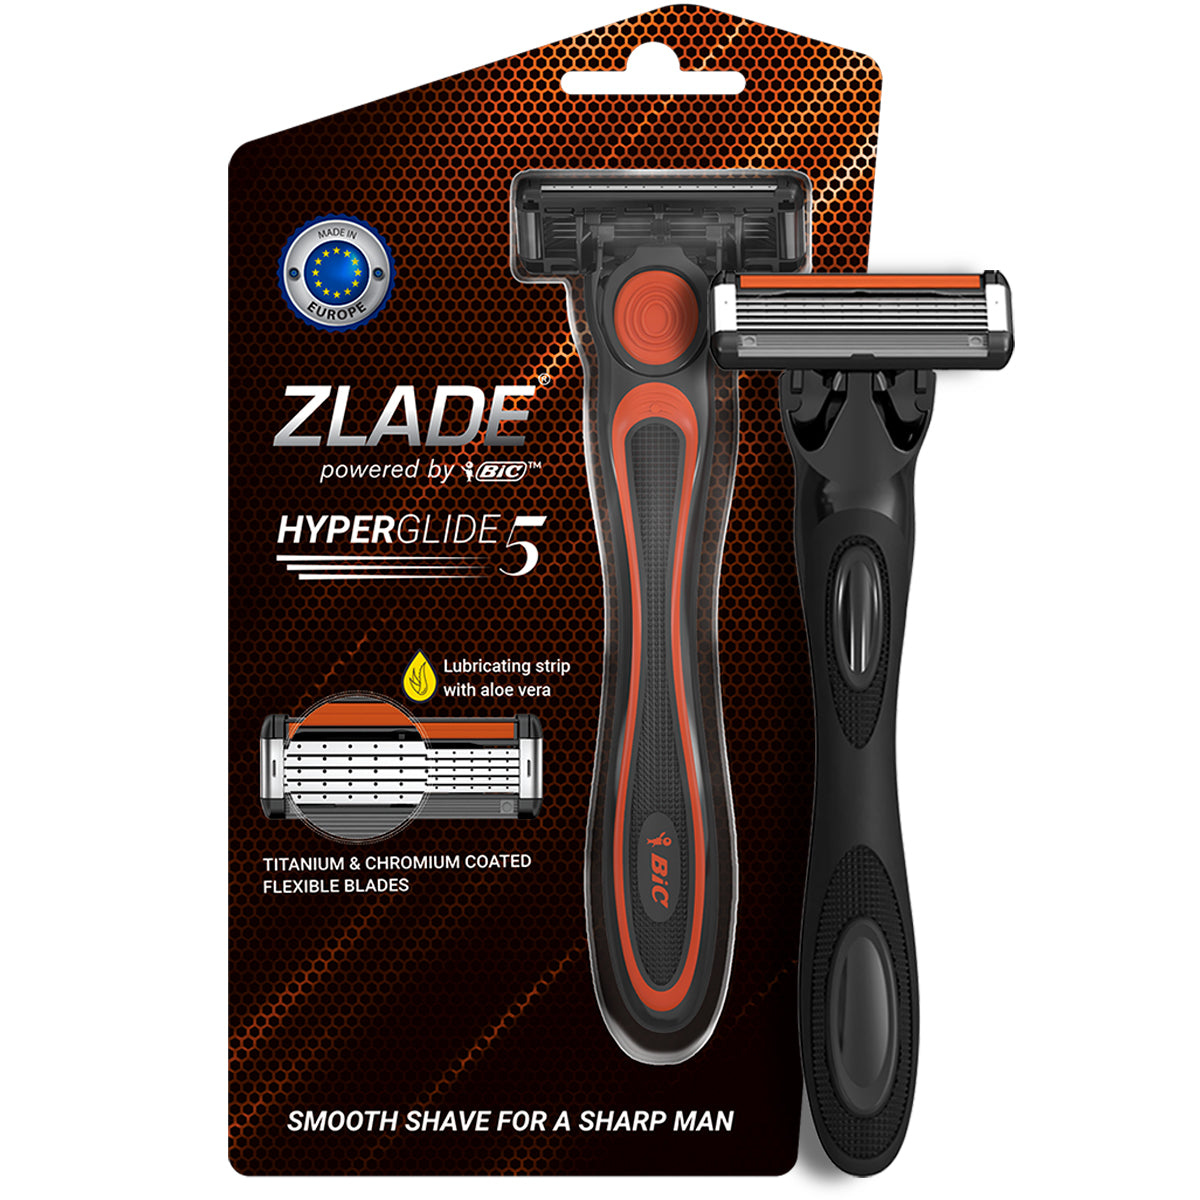 Zlade Ballistic Lite Trimmer & Zlade HyperGlide5 Shaving Razor